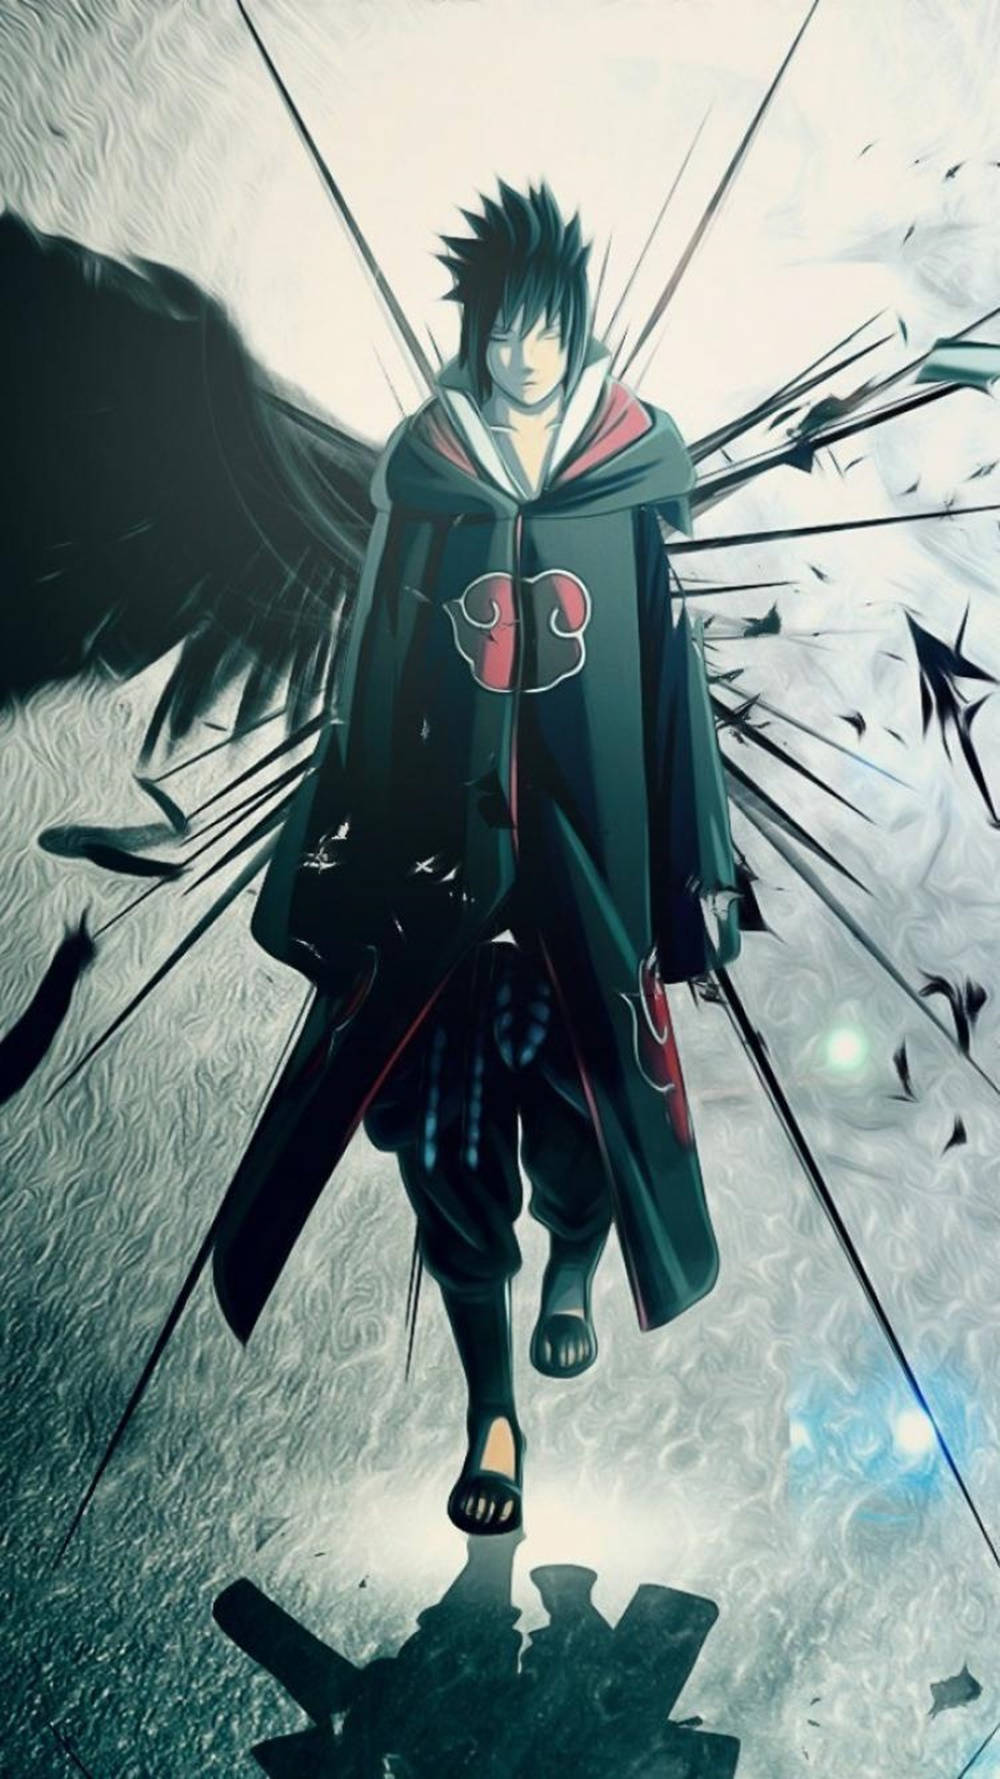 Sasuke Uchiha - The Unforgiving Ninja From Naruto Series On Iphone Wallpaper Background